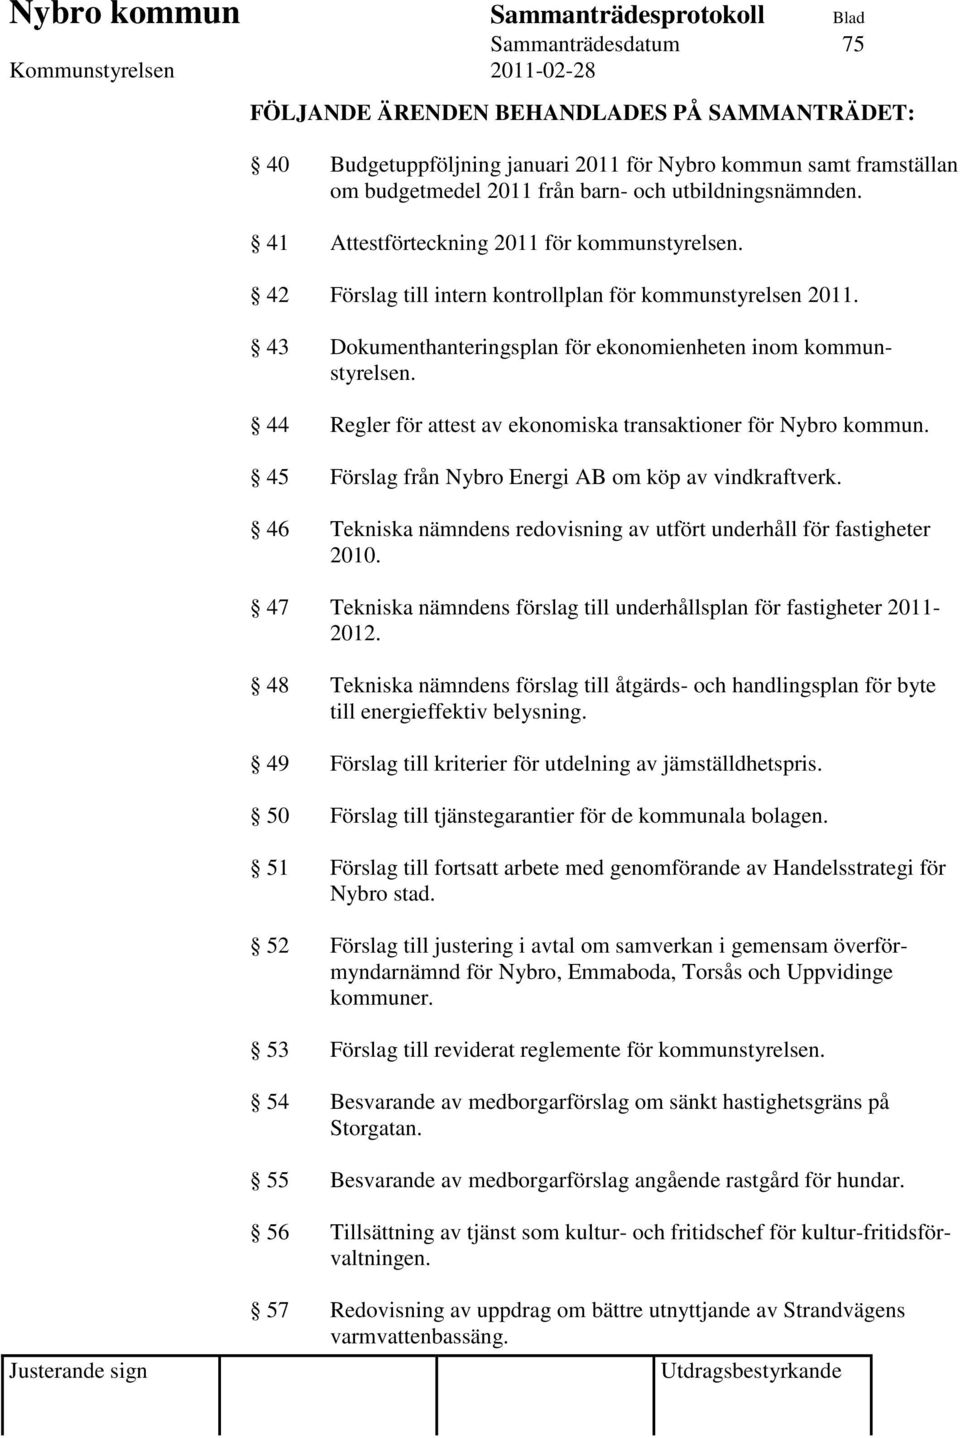 44 Regler för attest av ekonomiska transaktioner för Nybro kommun. 45 Förslag från Nybro Energi AB om köp av vindkraftverk. 46 Tekniska nämndens redovisning av utfört underhåll för fastigheter 2010.